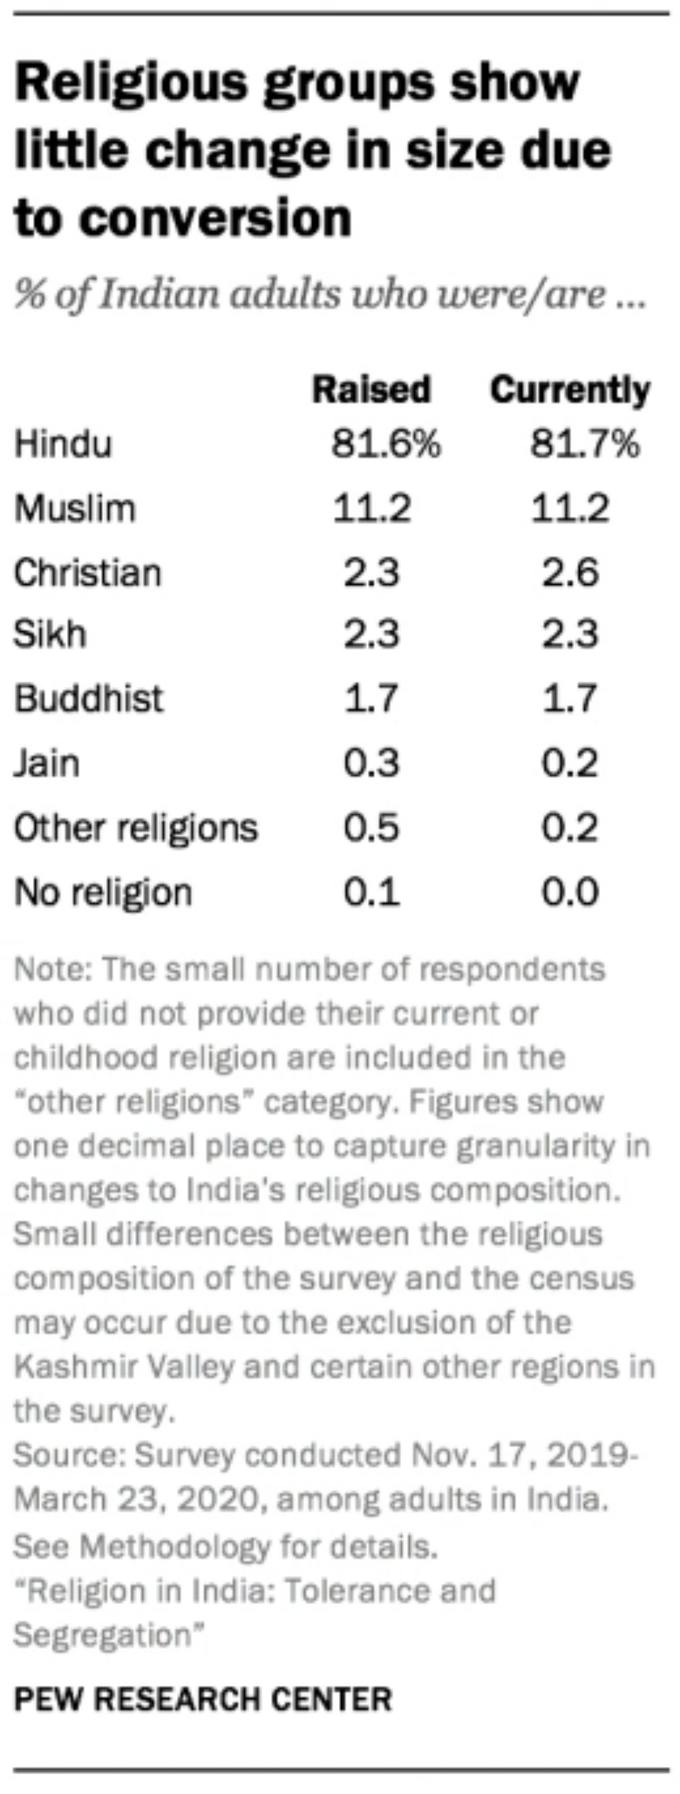 धर्म परिवर्तन से आबादी पर ज्‍यादा असर नहीं